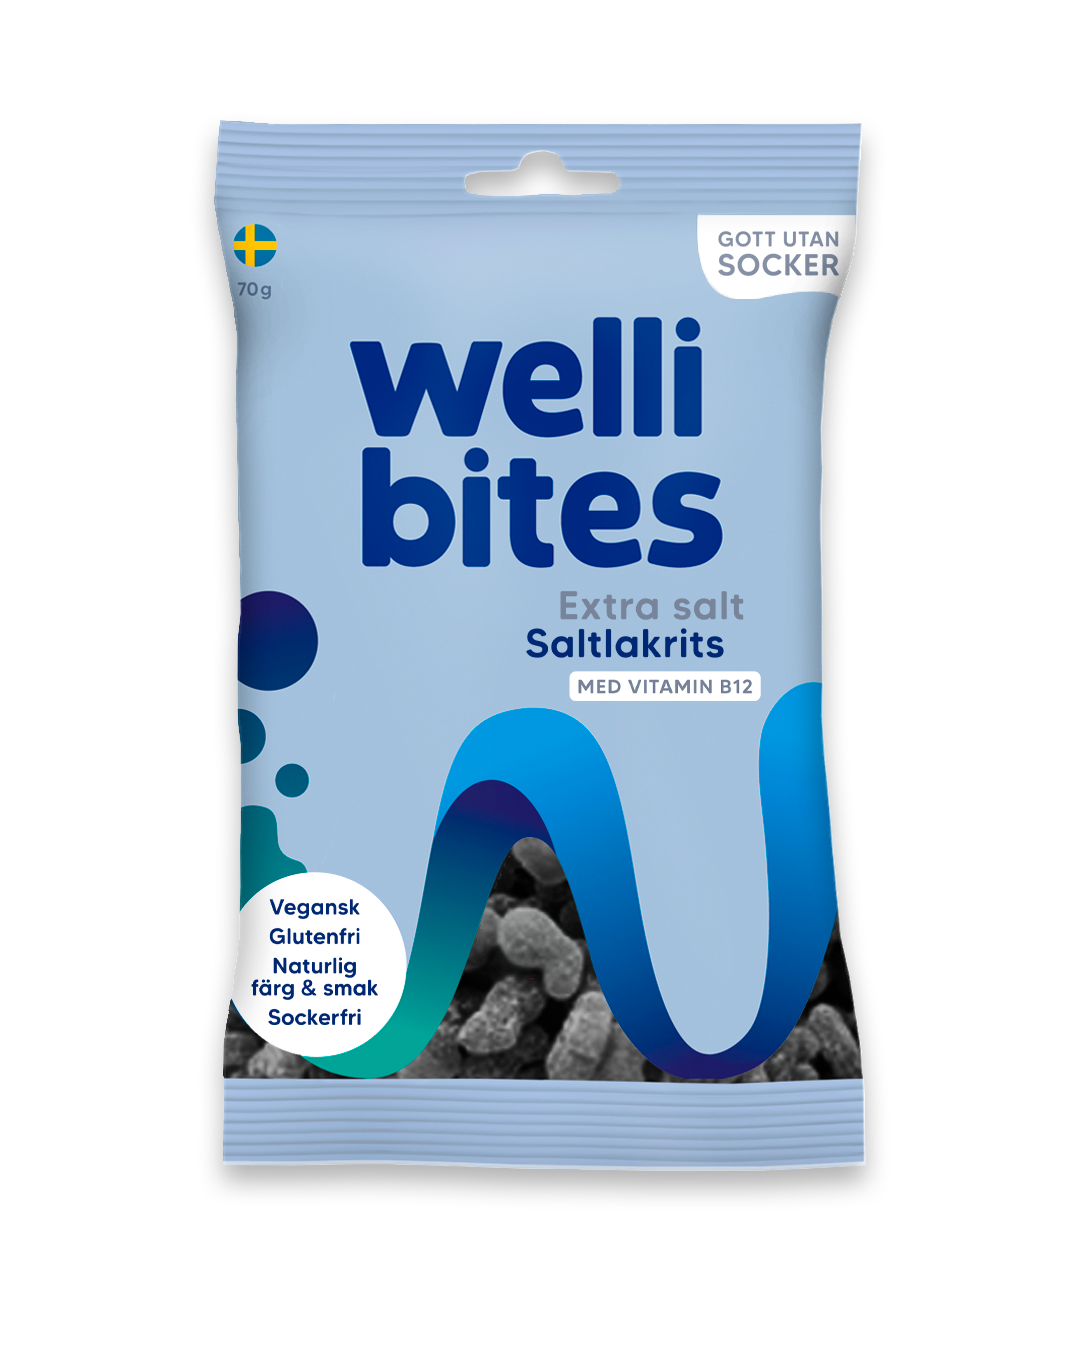 Wellibites Extra salt saltlakrits 70g